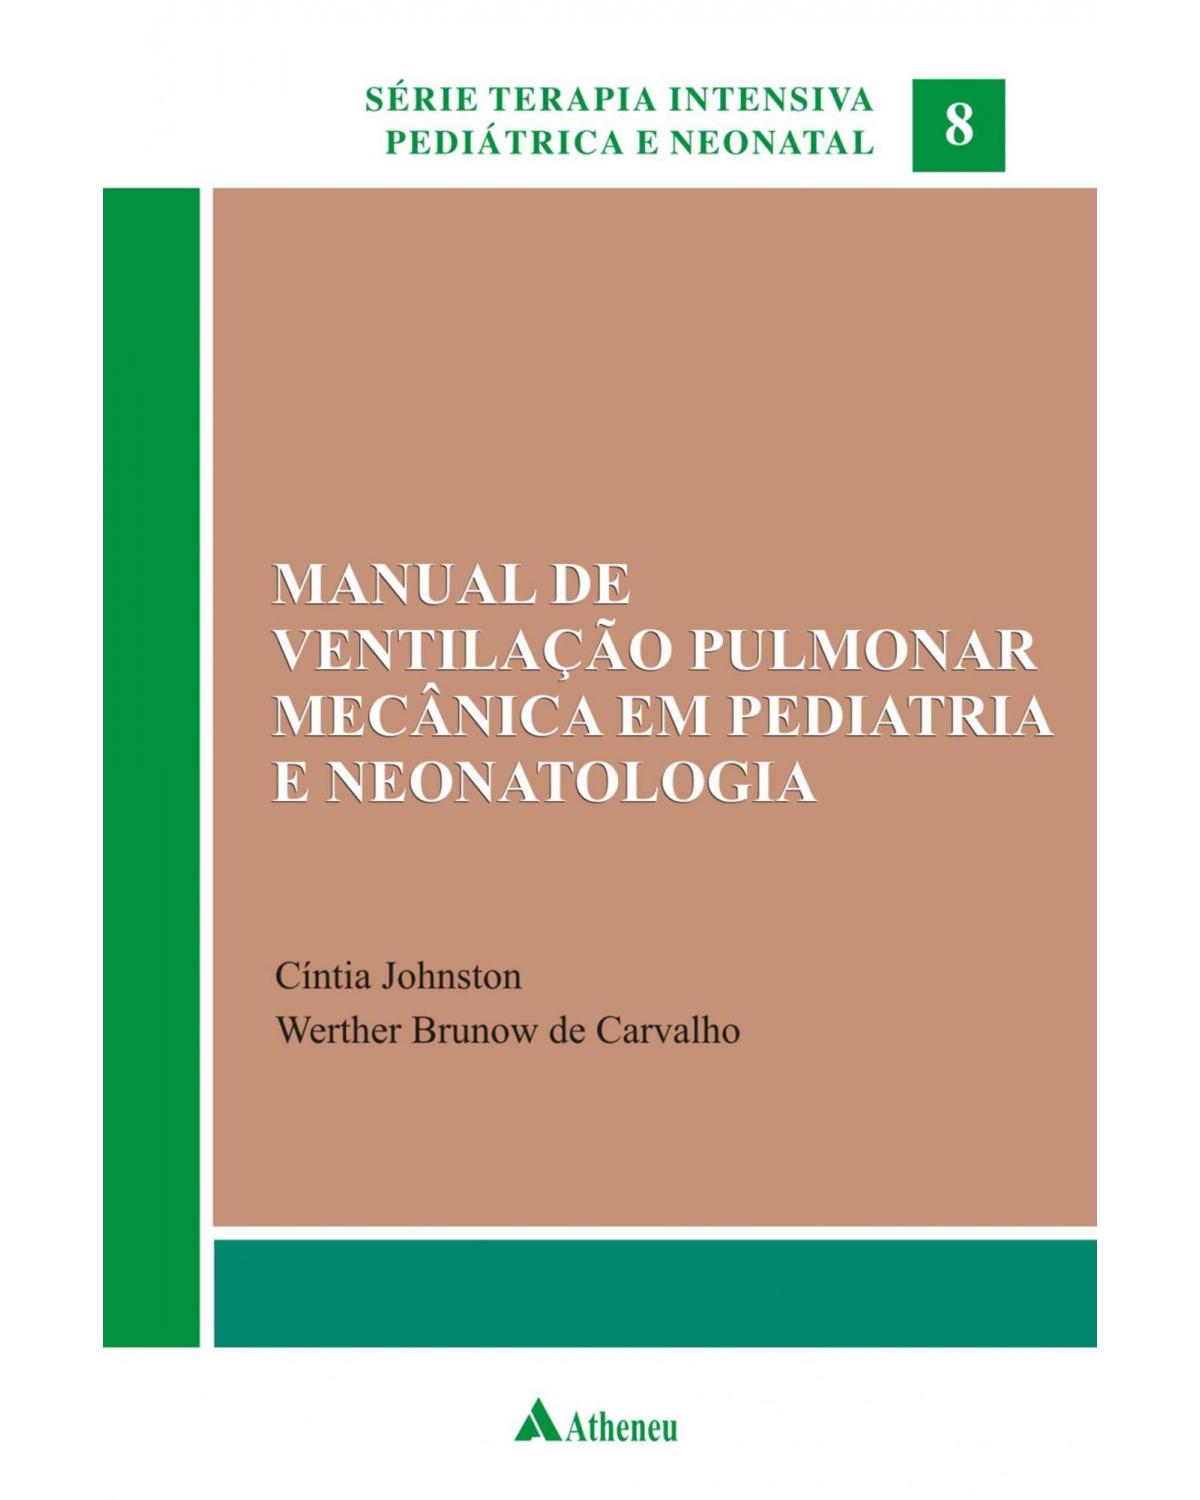 Manual de ventilação pulmonar mecânica em pediatria e neonatologia - Volume 8:  - 1ª Edição | 2012